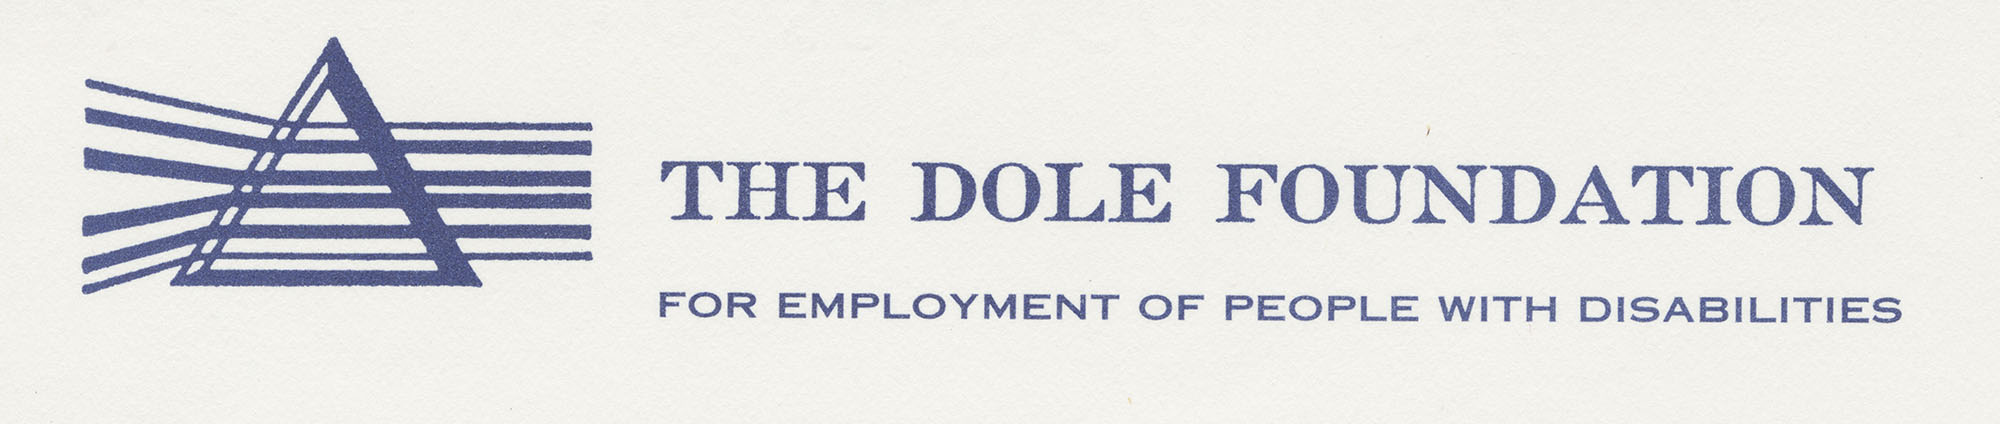 Dole Foundation logo